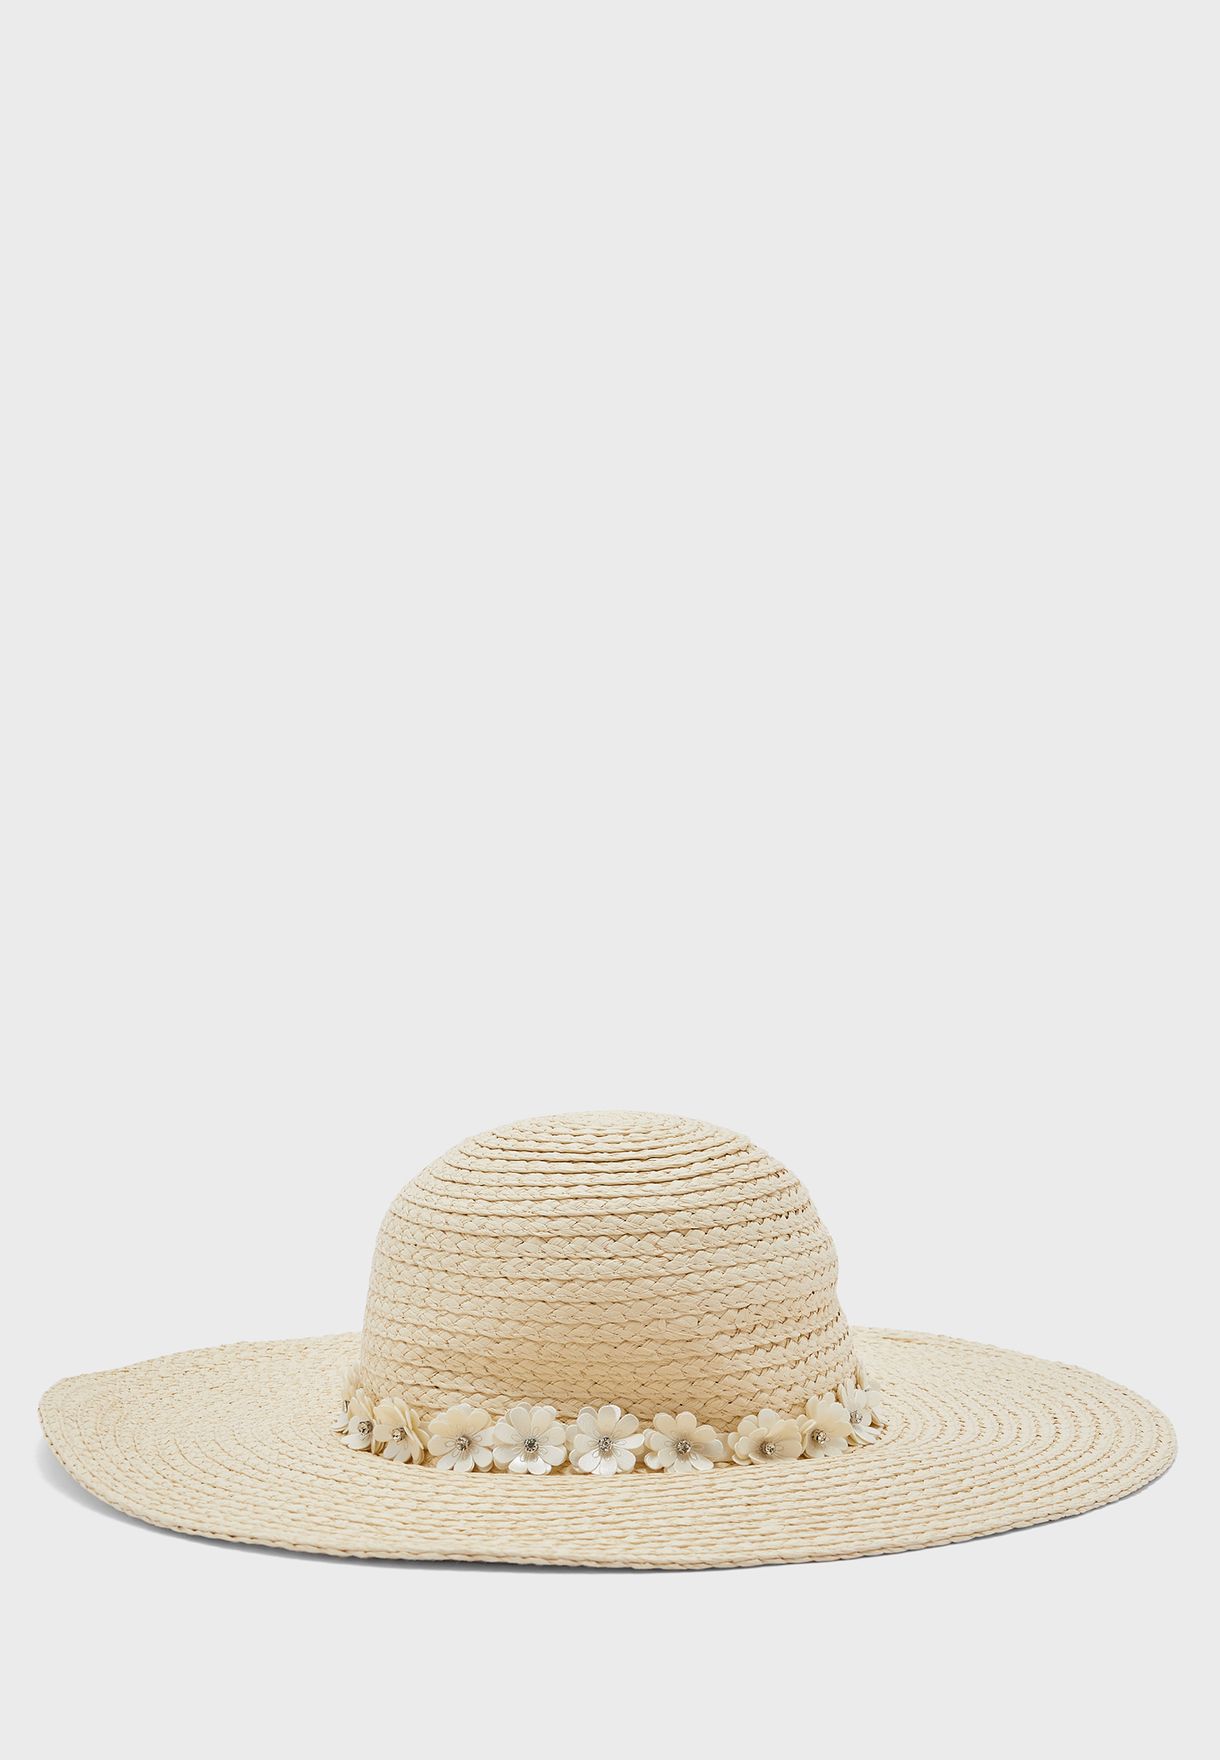 قبعة قش مزين بورود